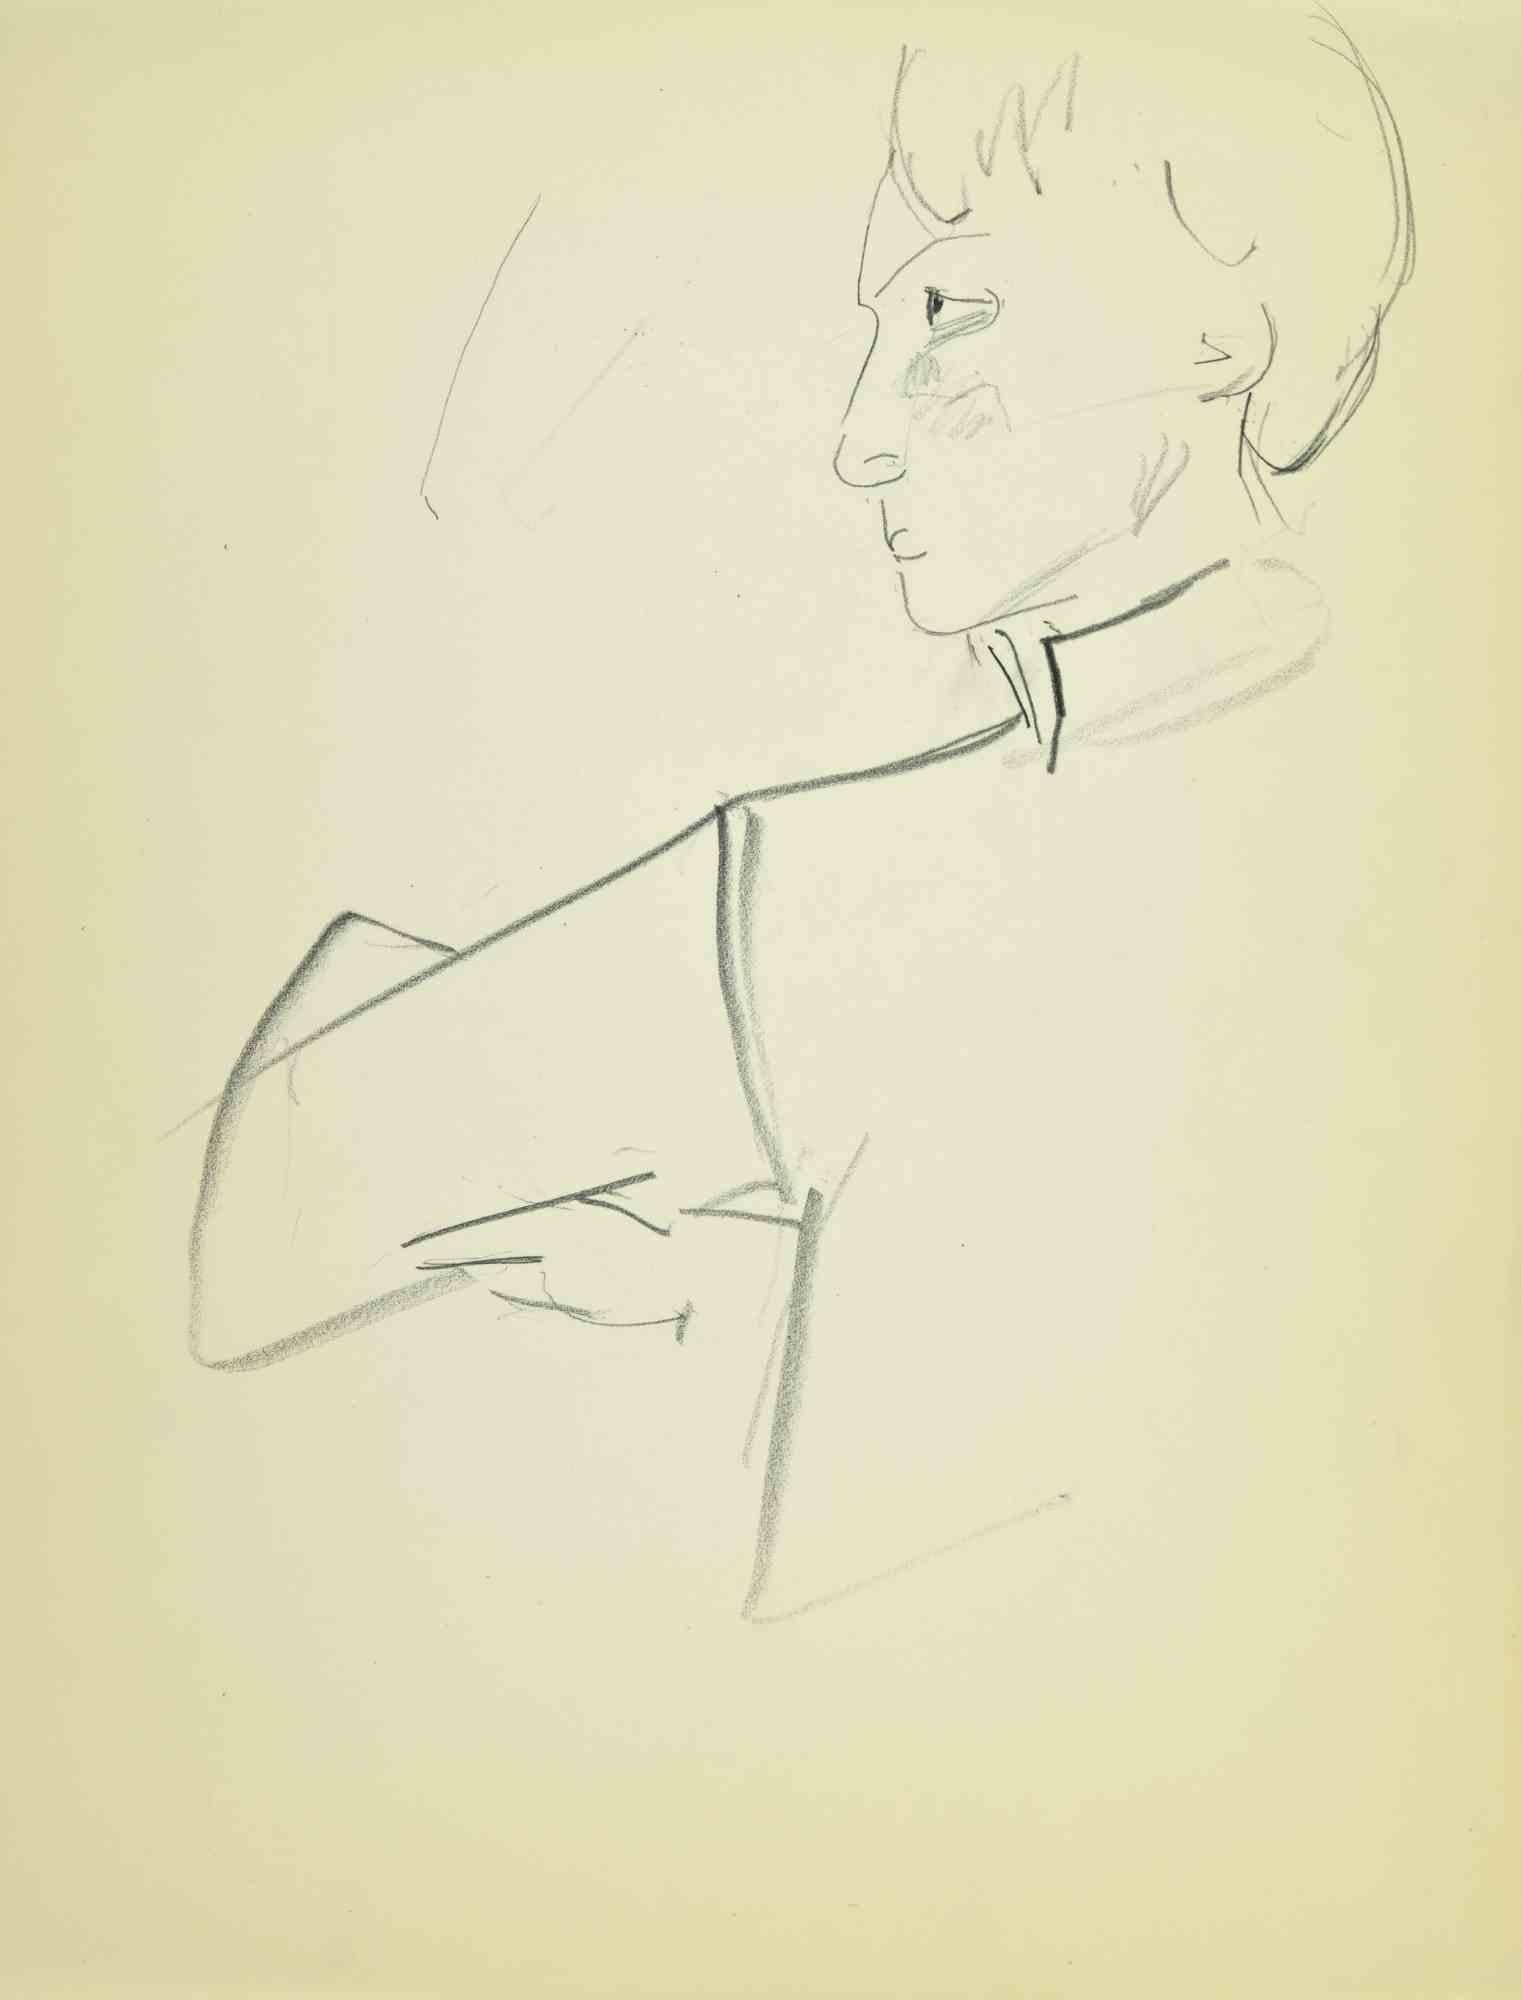 Portrait ist eine Zeichnung auf Papier, die Mitte des 20. Jahrhunderts von Flor David angefertigt wurde.

Bleistift auf cremefarbenem Papier.

Gute Bedingungen.

Flor David (1891-1958) ):  Pseudonym von David Florence. Pastellmaler. Er war ein